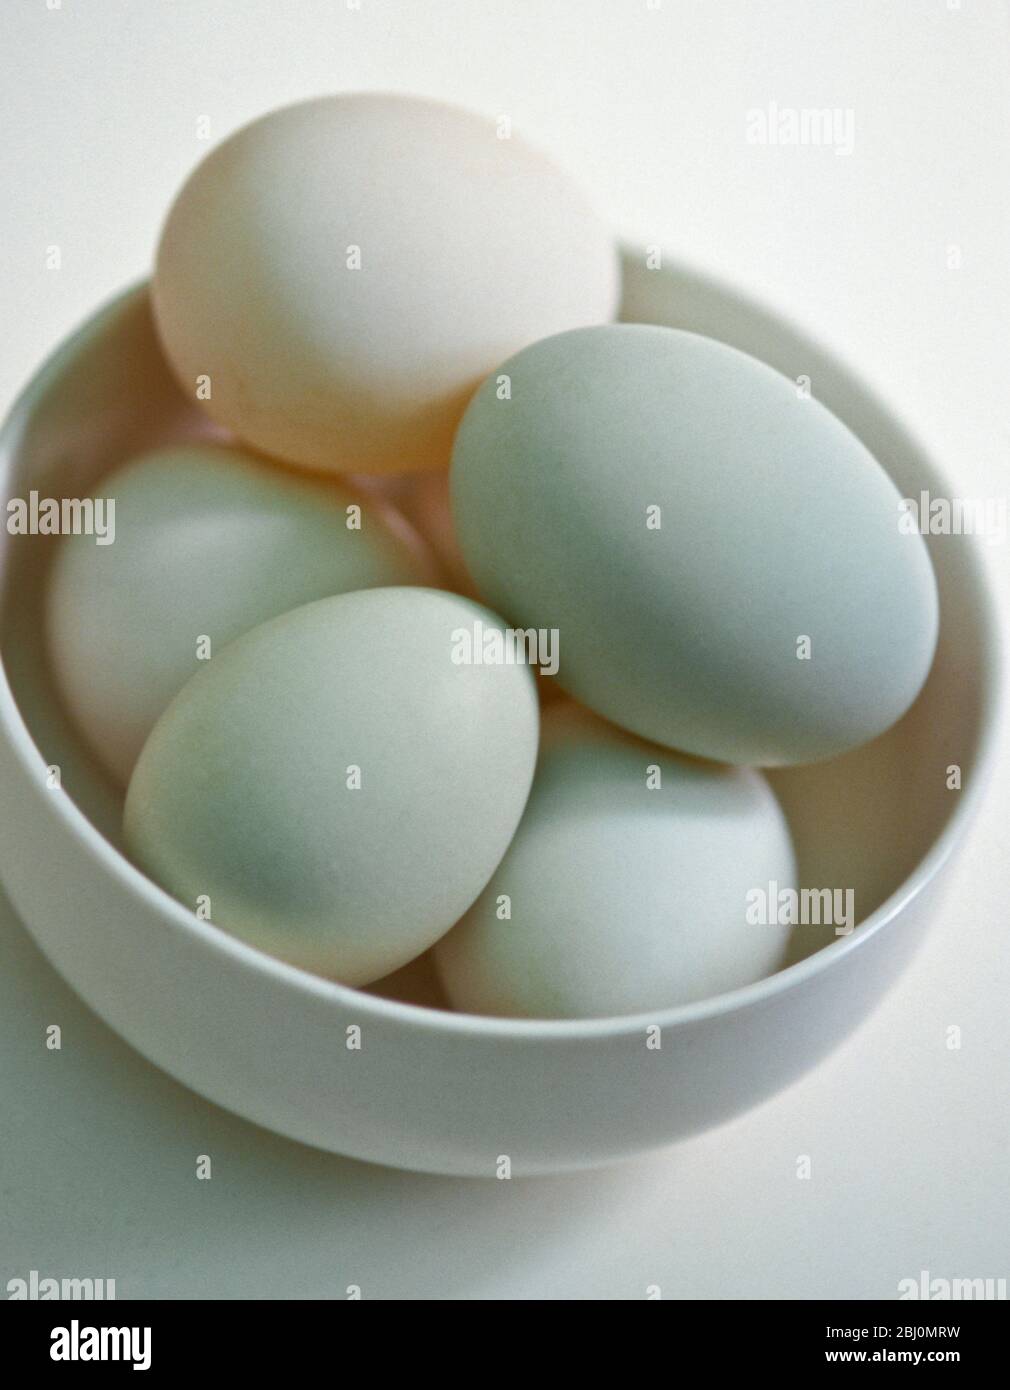 Bol d'œufs de spécialité, naturellement différentes nuances de vert et de bleu sur la surface blanche. - Banque D'Images